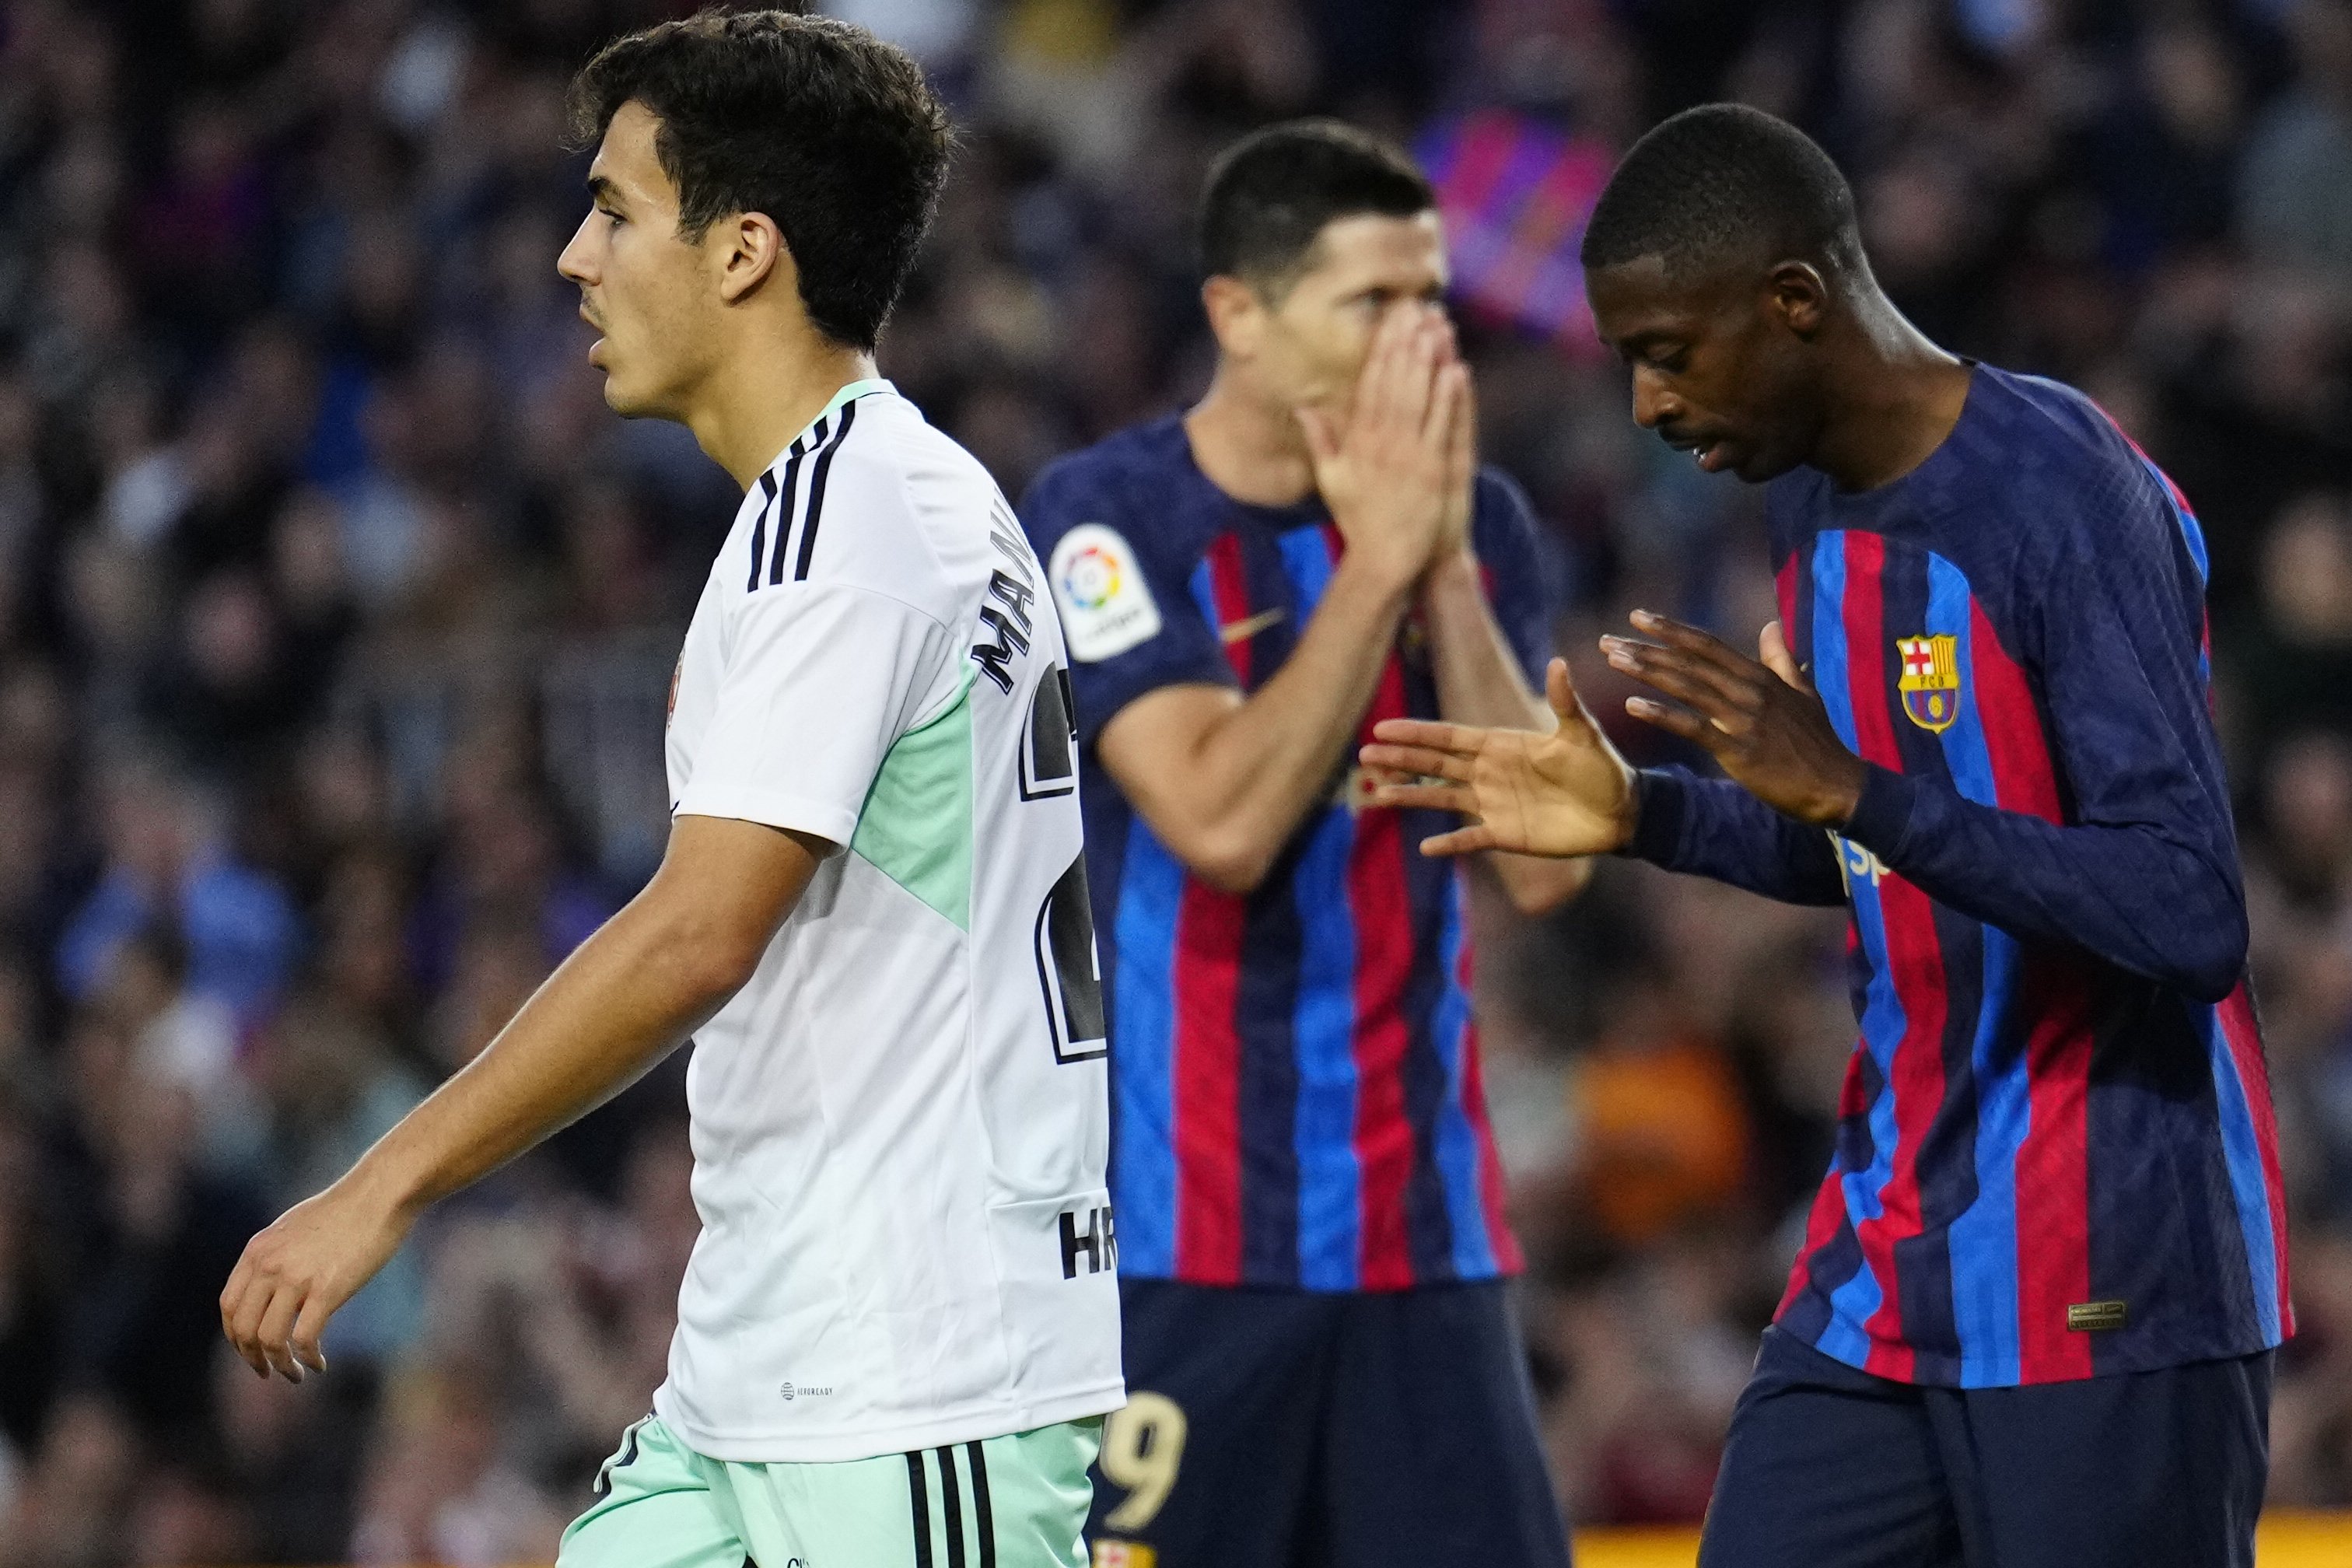 El gran rival de Dembélé està tancat, primer fitxatge del nou Barça, Xavi Hernández ha dit "sí"